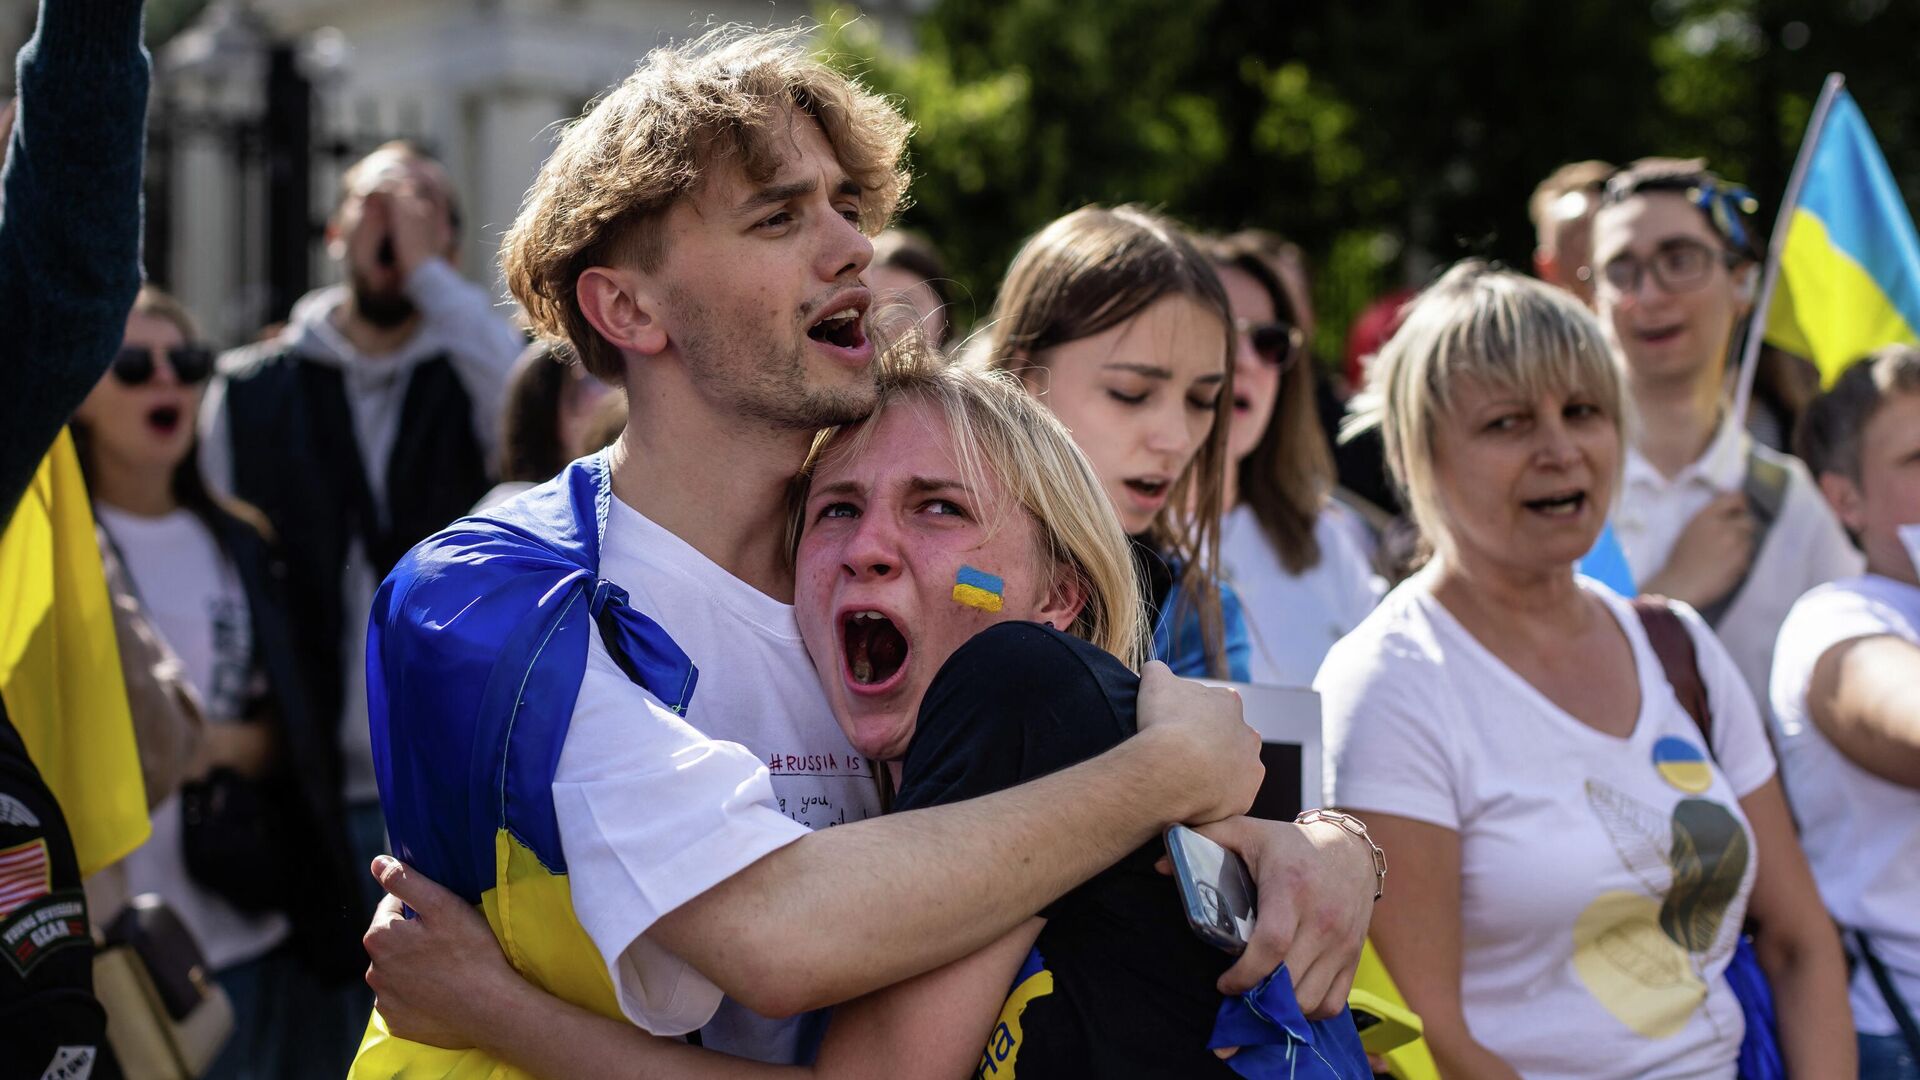 Европа против украины. Шведы болельщики. Украинцы в Европе. Русские и украинцы. Польская молодежь.